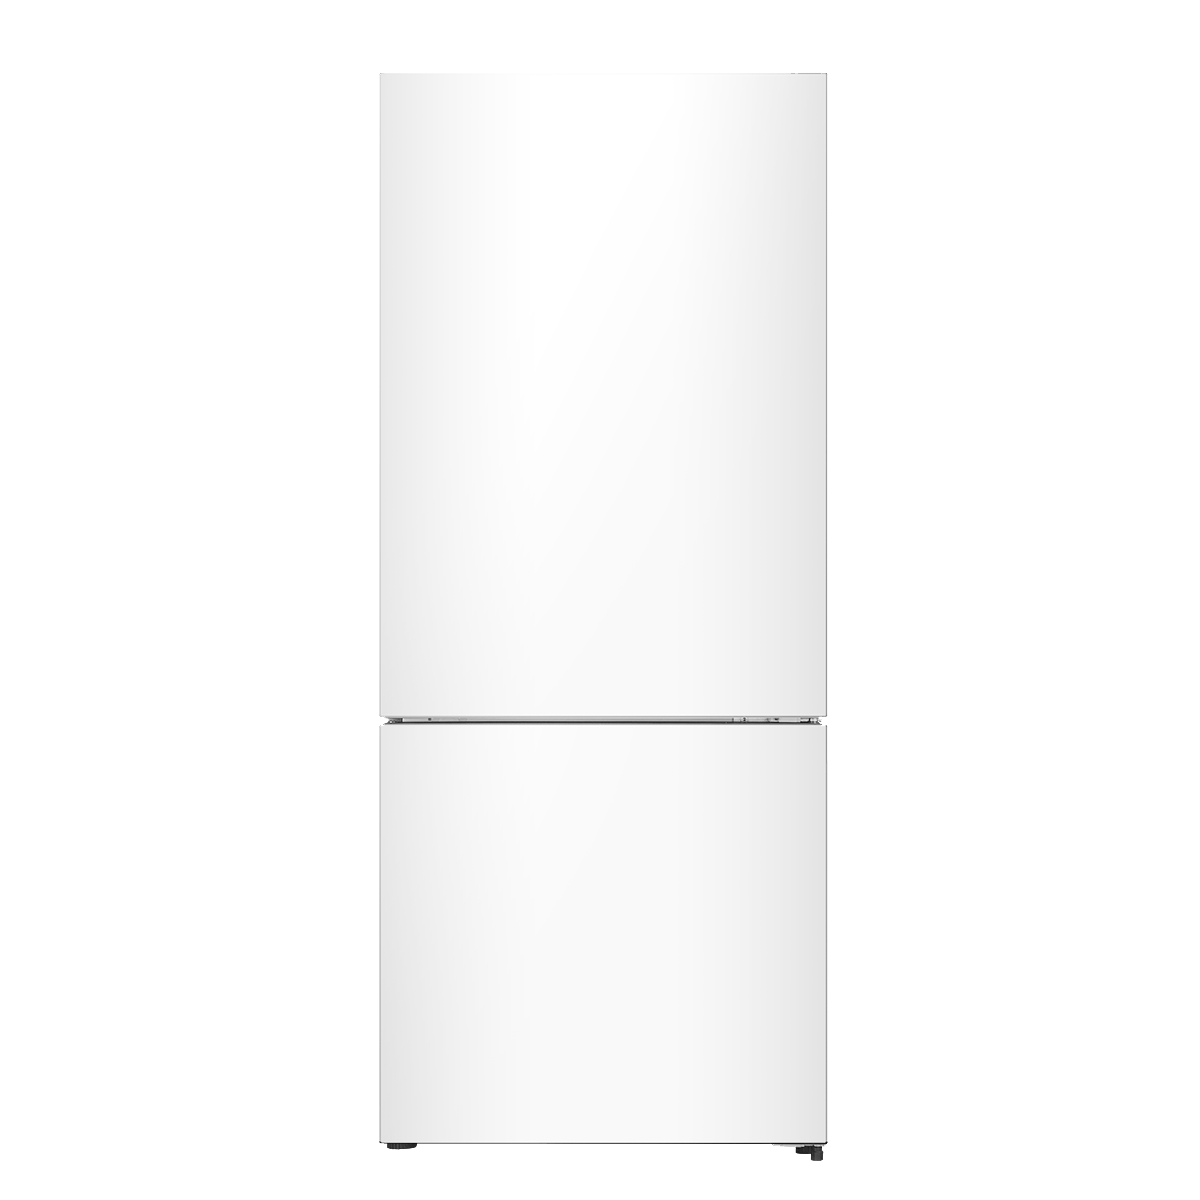 MORA 14.8 cu. ft. Counter Depth Bottom Freezer Refrigerator